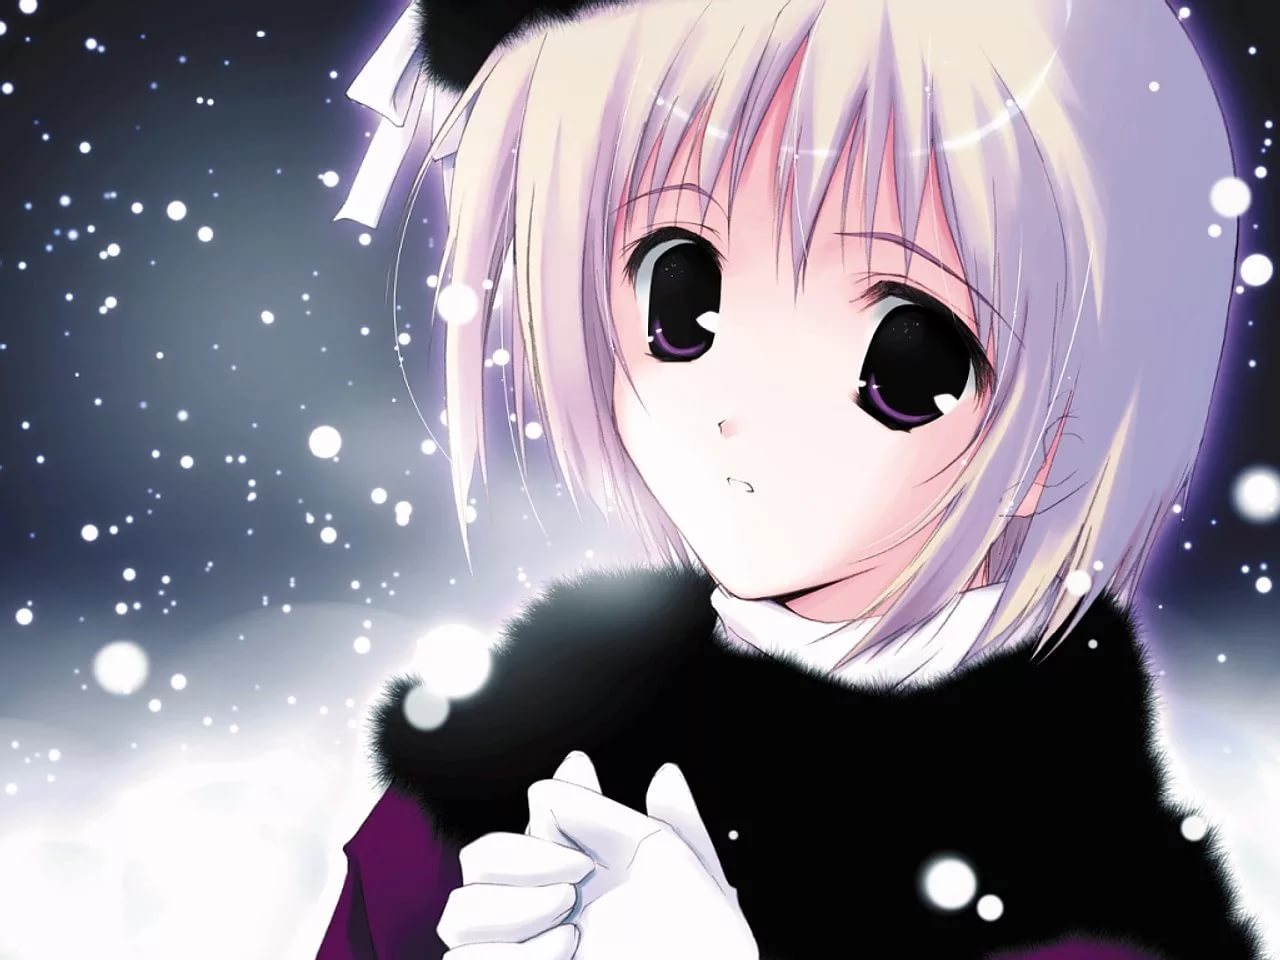 Фото на аватарку для девочек аниме